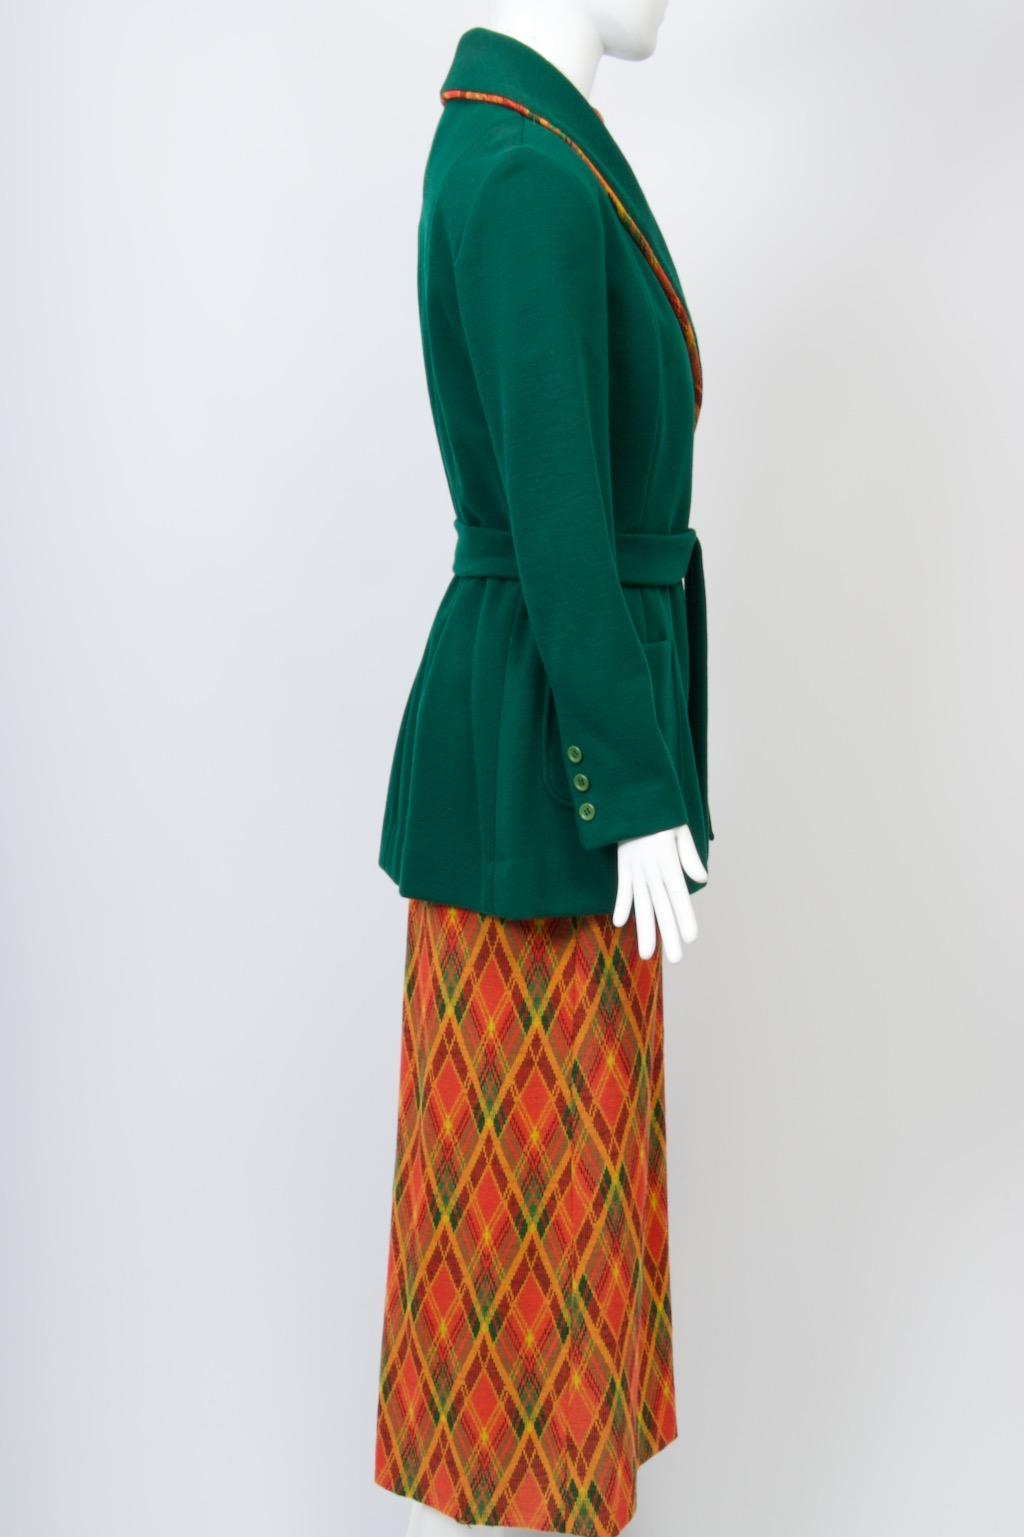 Brenner Couture 1970er Jahre ungewöhnliches Strickensemble bestehend aus einem karierten Maxikleid unter einer waldgrünen Jacke. Das ärmellose Kleid hat einen Mandarinenkragen, einen tiefen Seitenschlitz und einen Reißverschluss am Rücken. Über dem